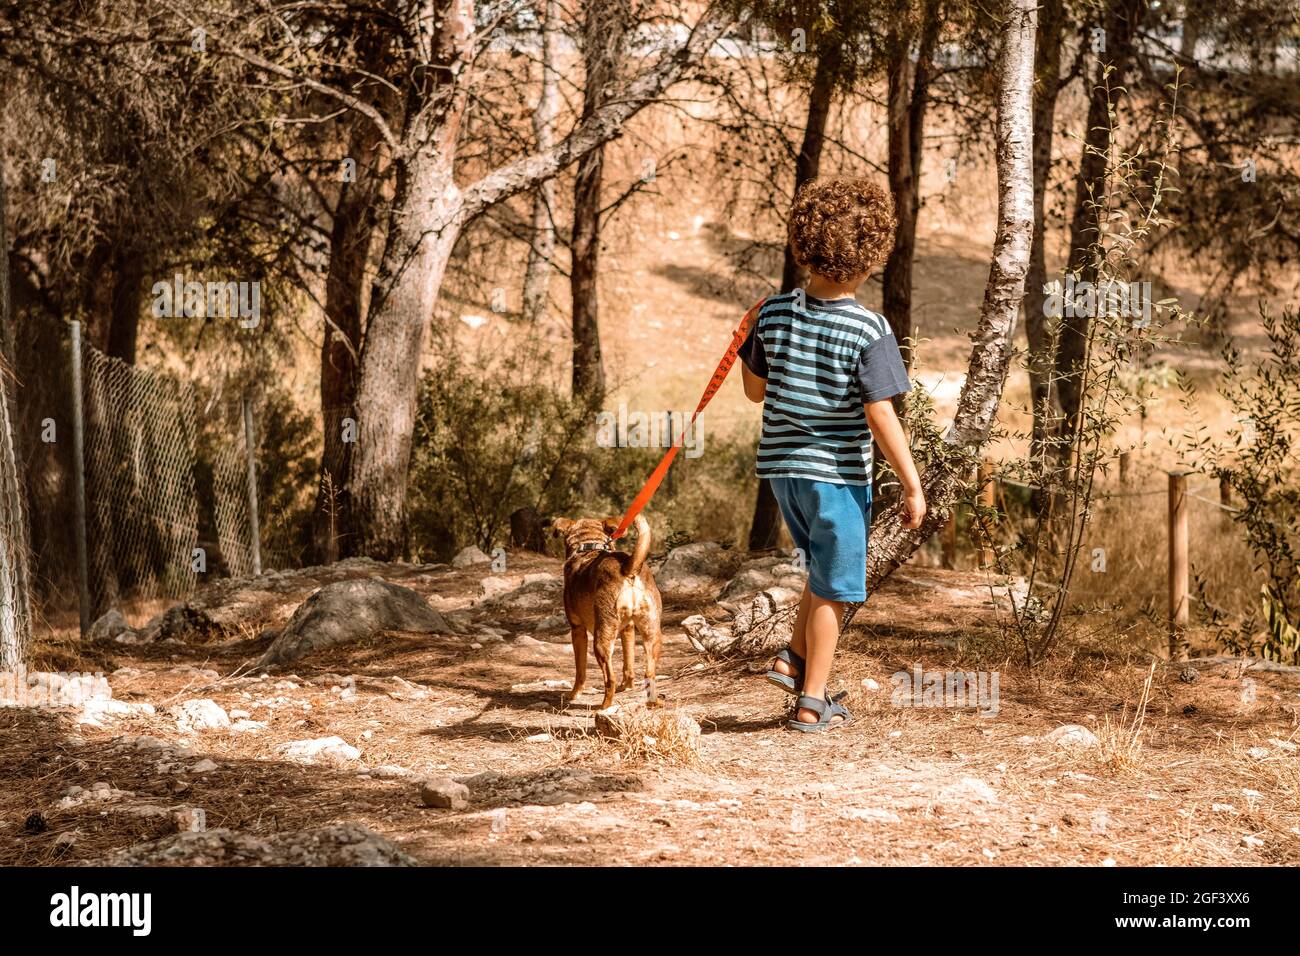 Junge und Welpe gehen im Wald, führen den Hund an der Leine, von hinten  gesehen an einem sonnigen Tag Stockfotografie - Alamy